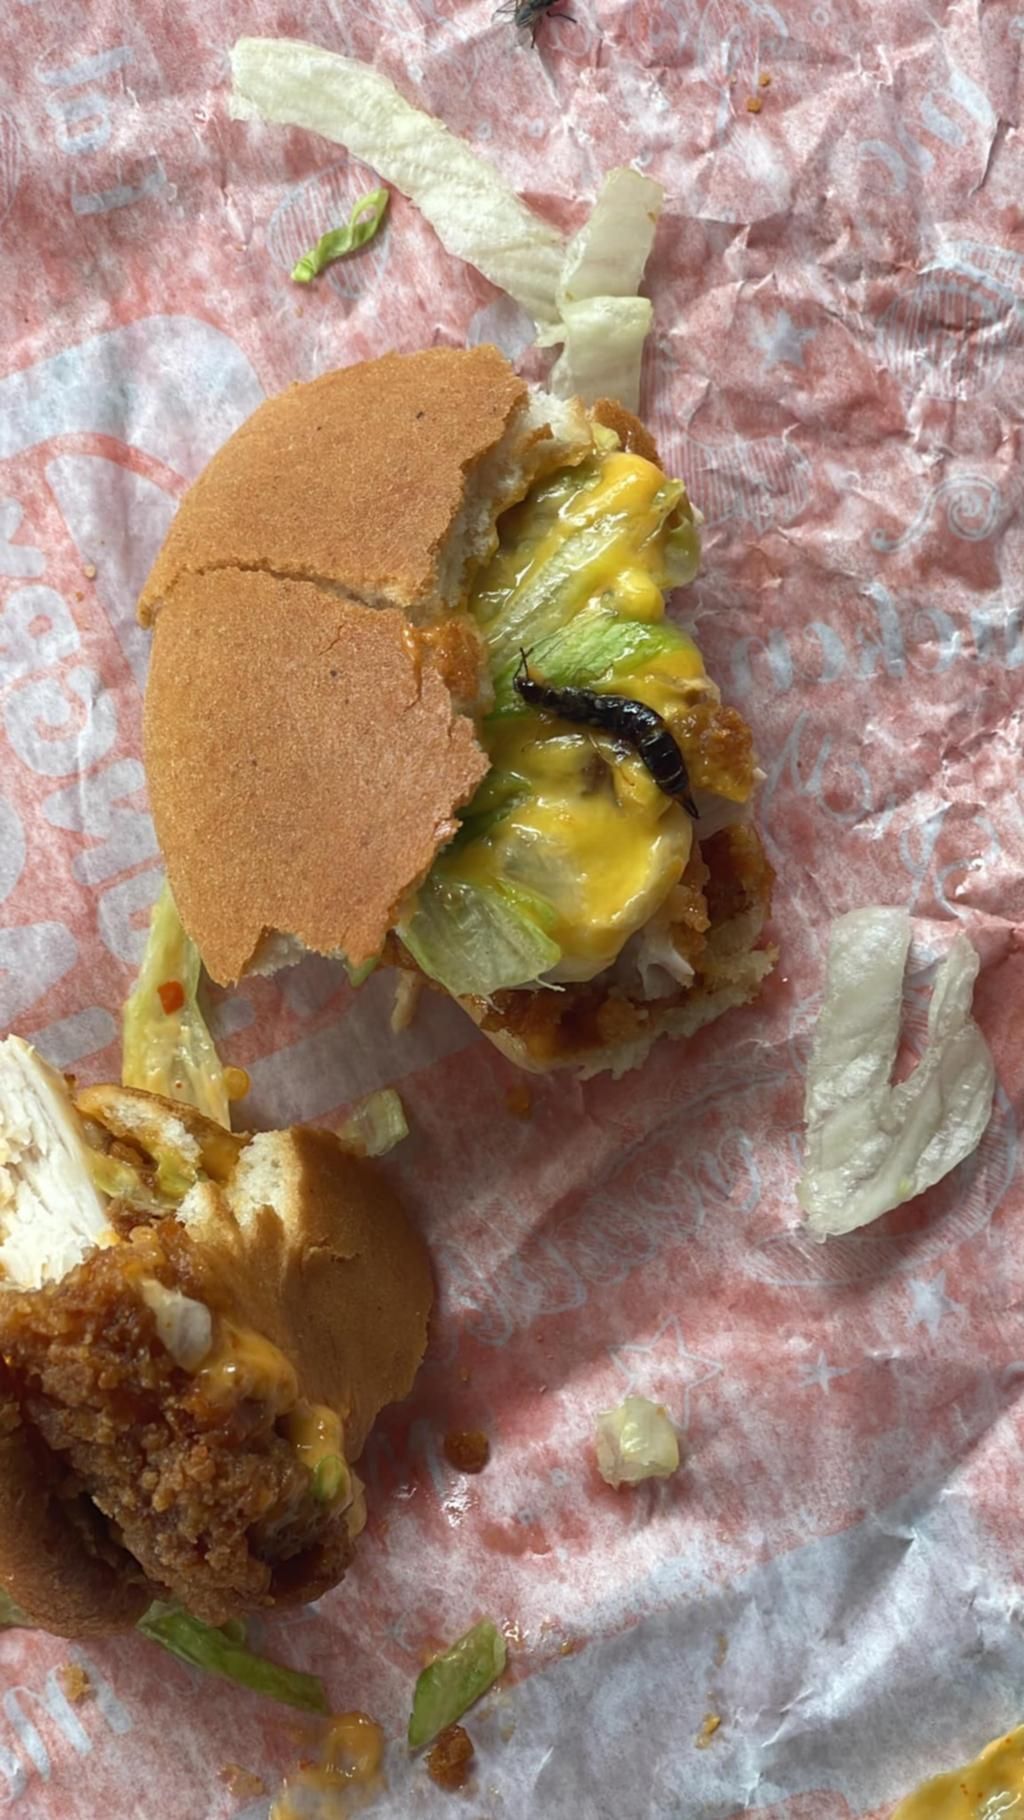 Beli Burger di Resto Populer, Pelanggan Kecewa Usai Temukan Serangga